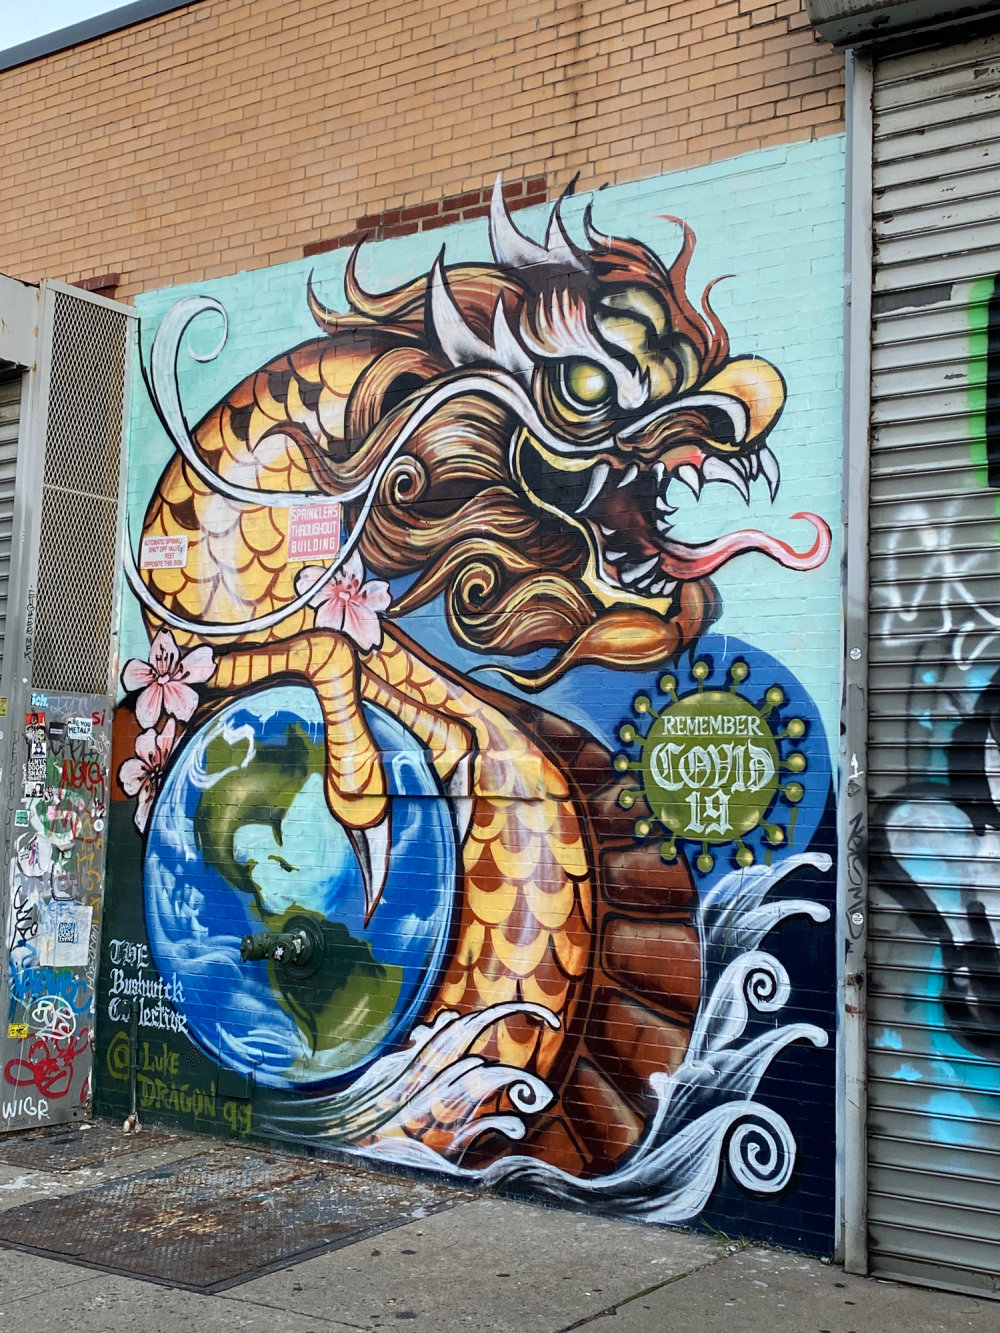 mural in Brooklyn by artist Luke Dragon 911.